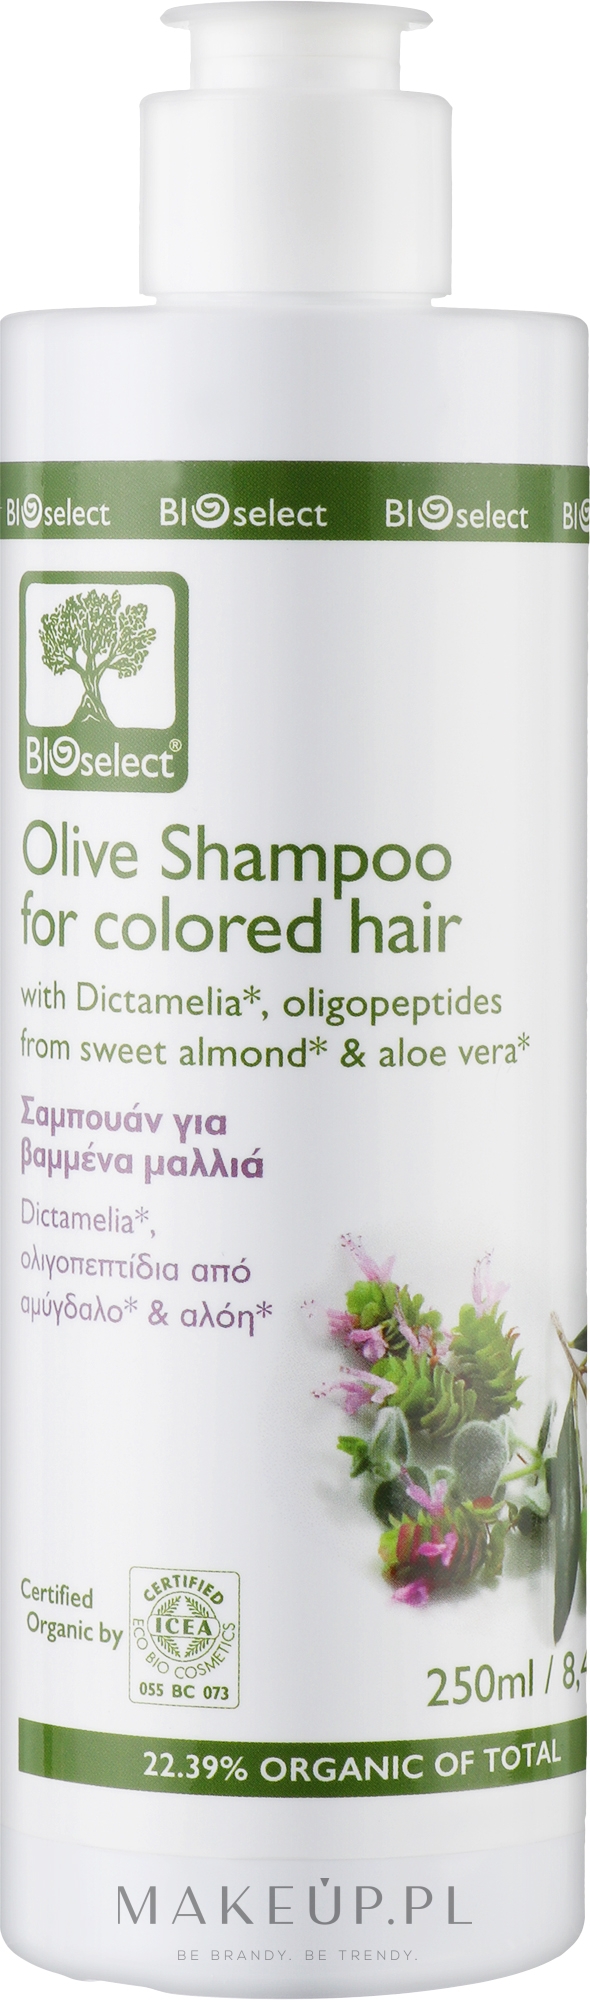 bioselect szampon oliwkowy ceneo